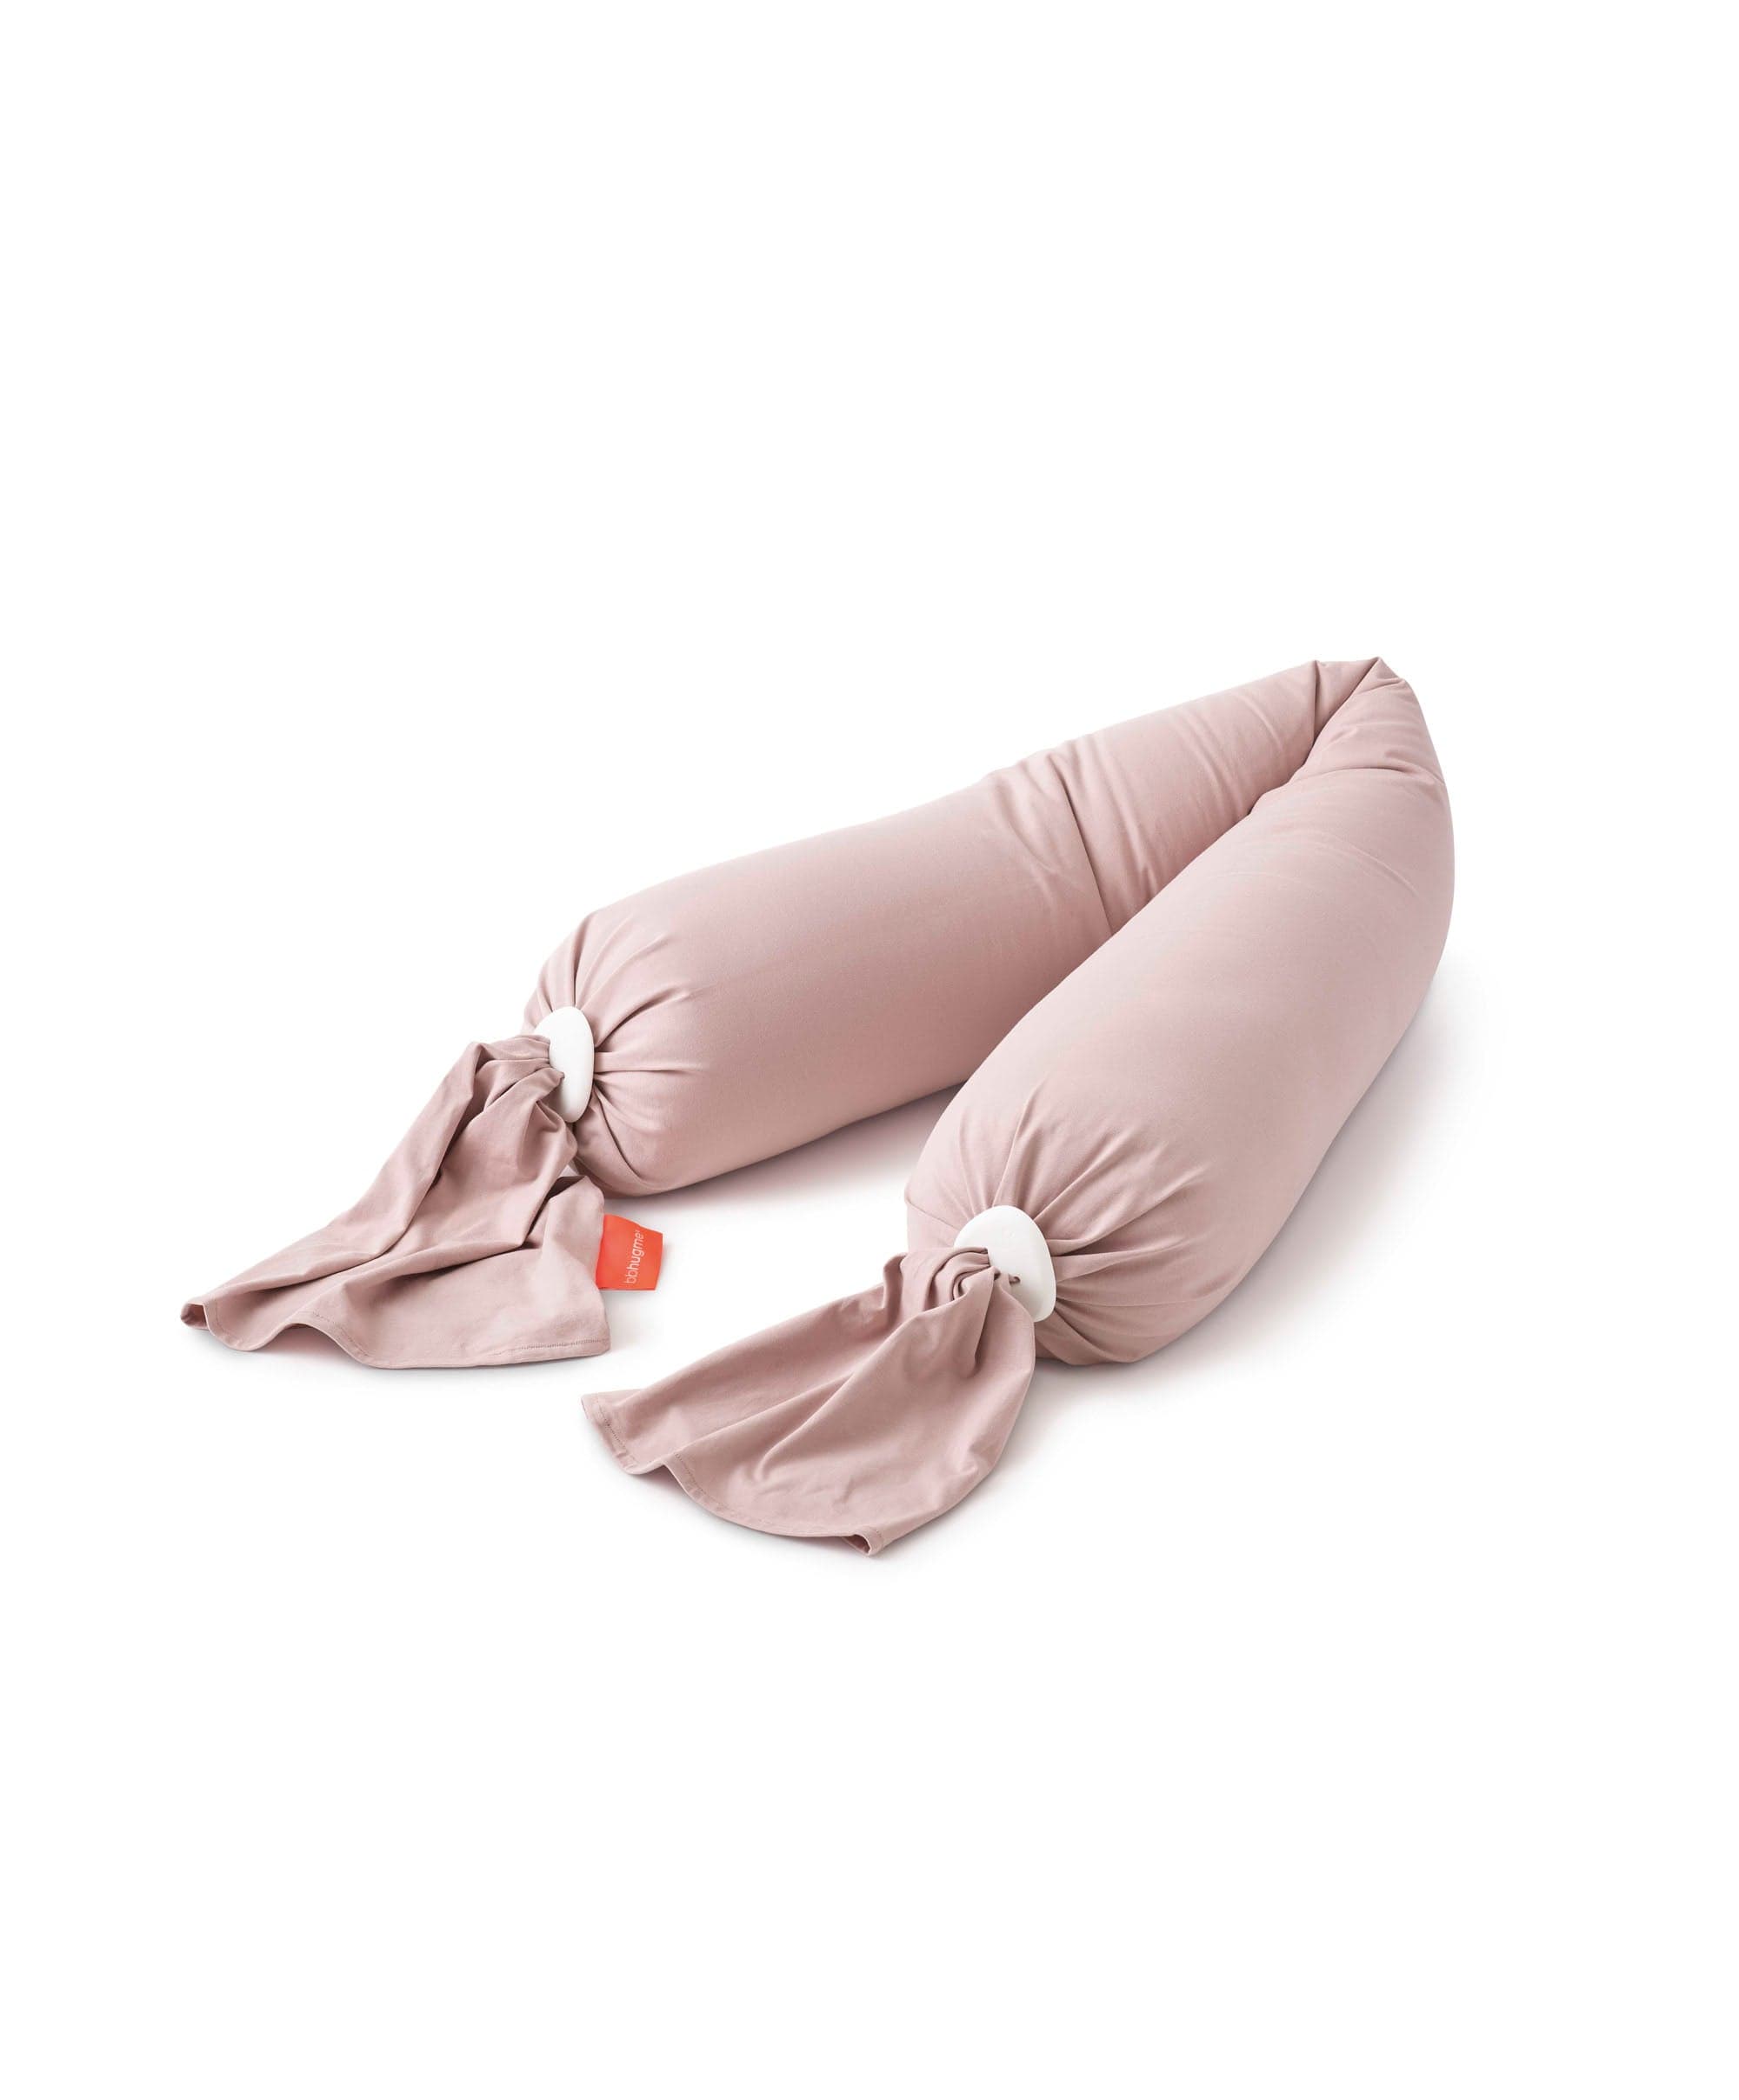 bbhugme™ Pregnancy Pillow Kit - Dusty Pink